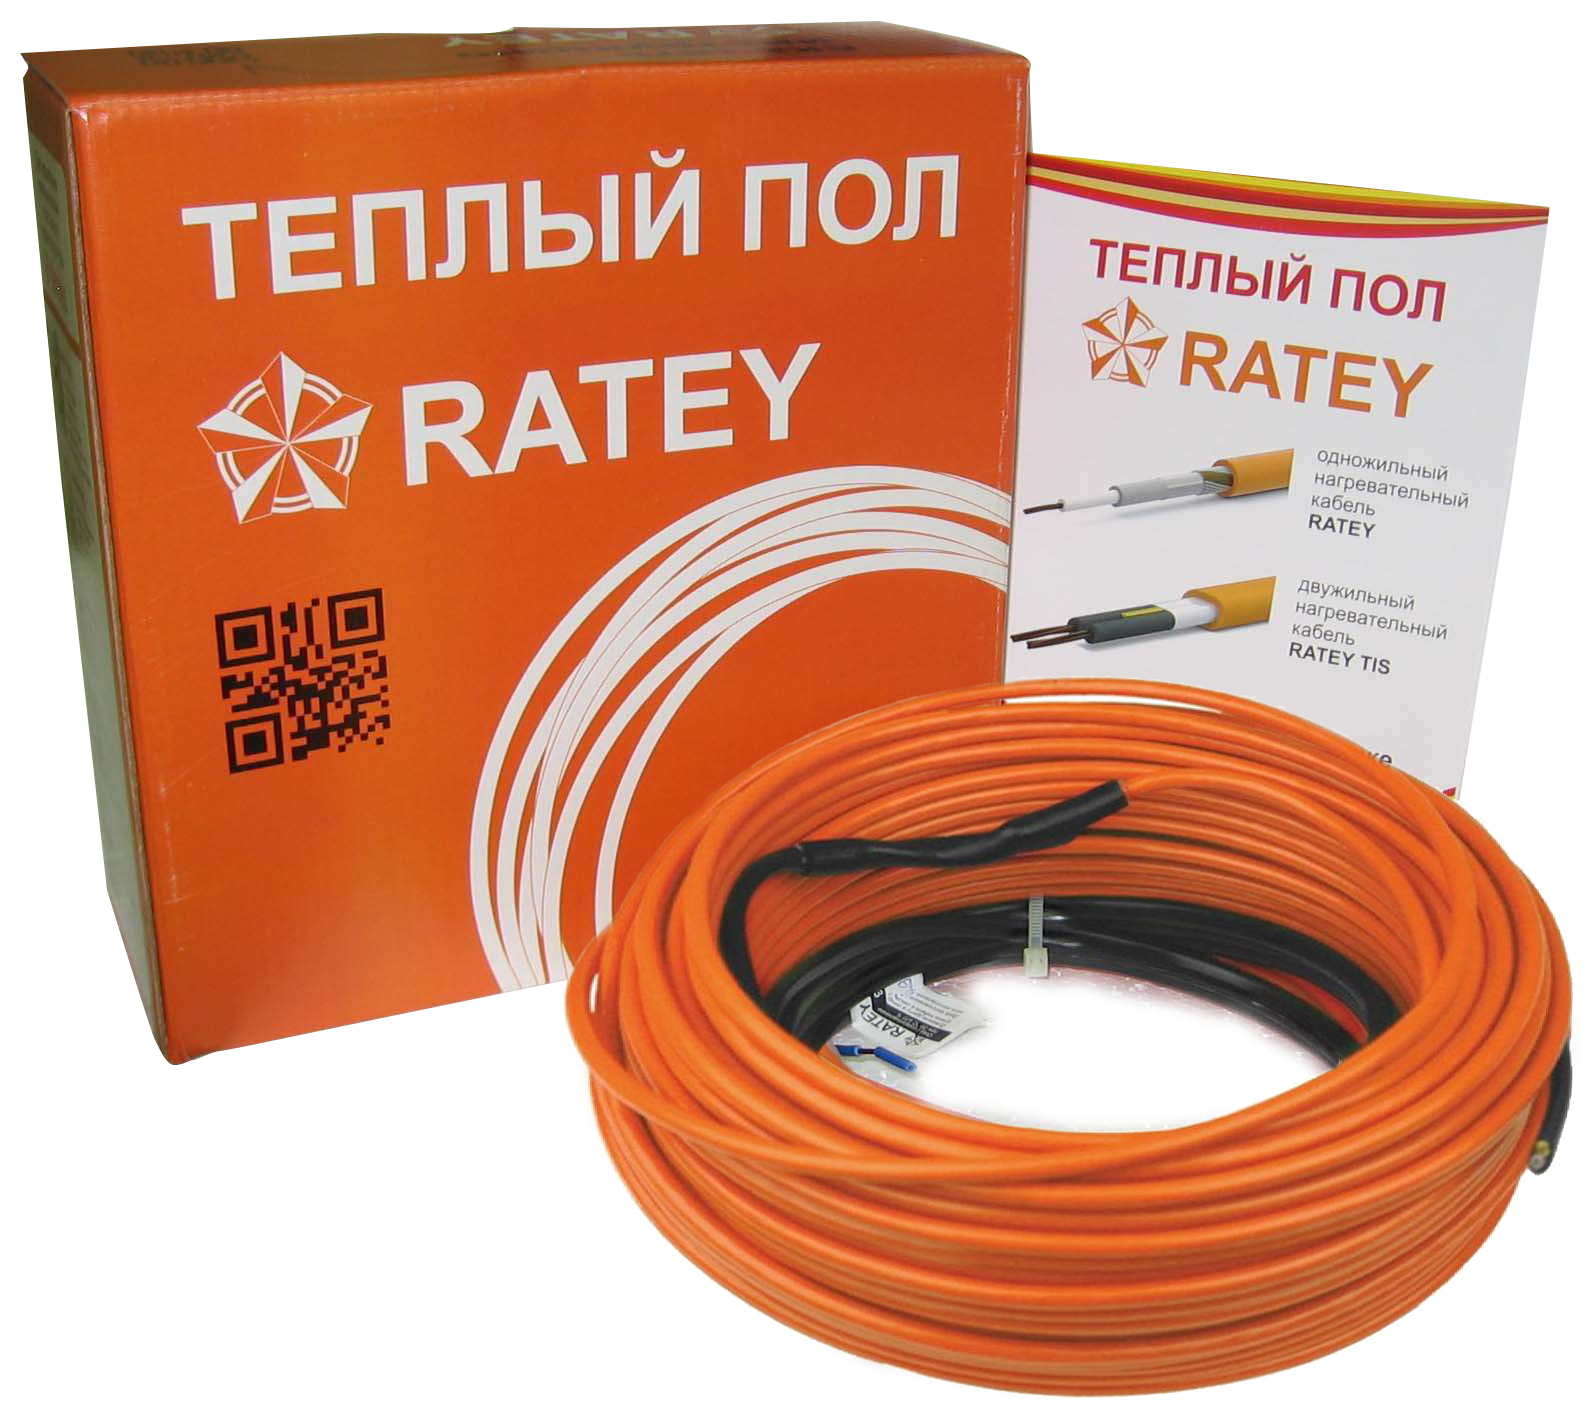 Тепла підлога Ratey під ламінат Ratey RD1 1.700